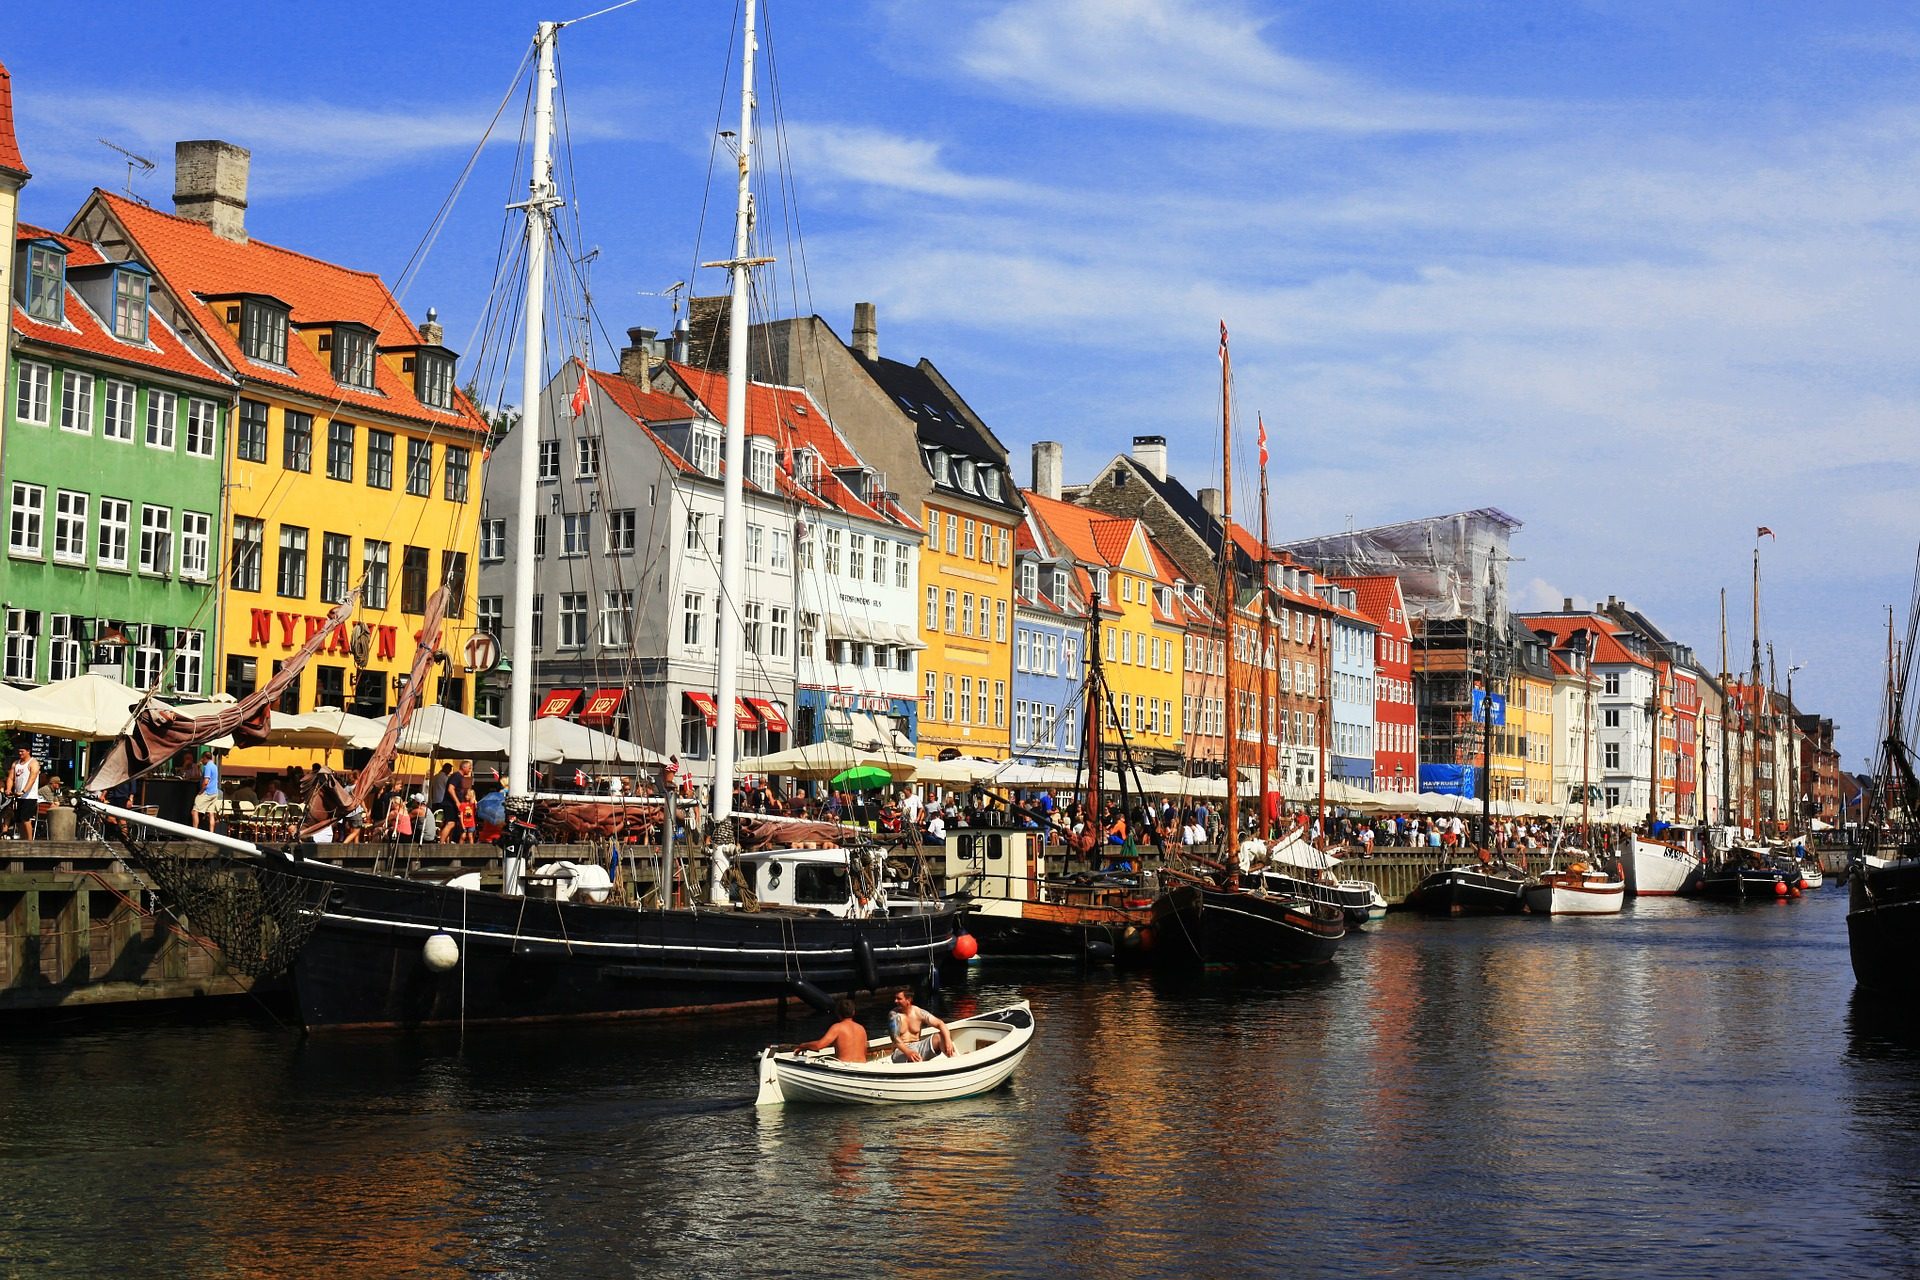 Städte Trip nach Kopenhagen zentrale Lage 2 Nächte + Flug ab 125,86€